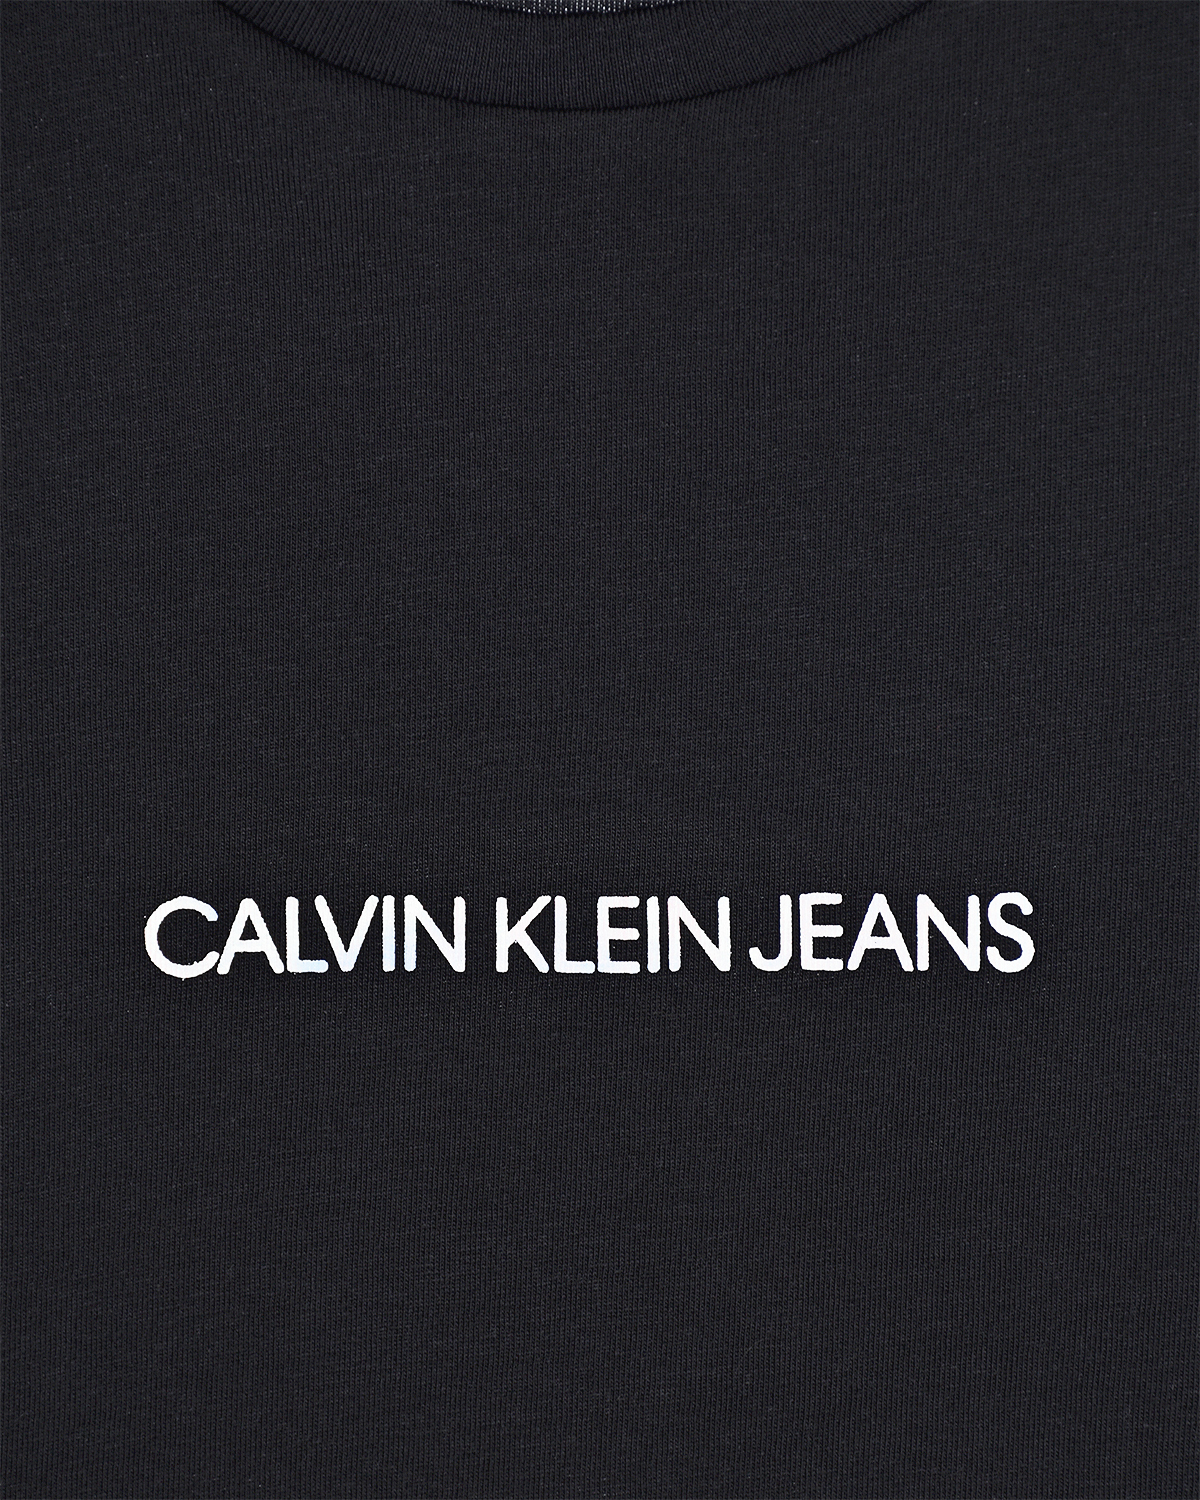 Черная футболка с белым логотипом Calvin Klein детская, размер 152, цвет черный - фото 3